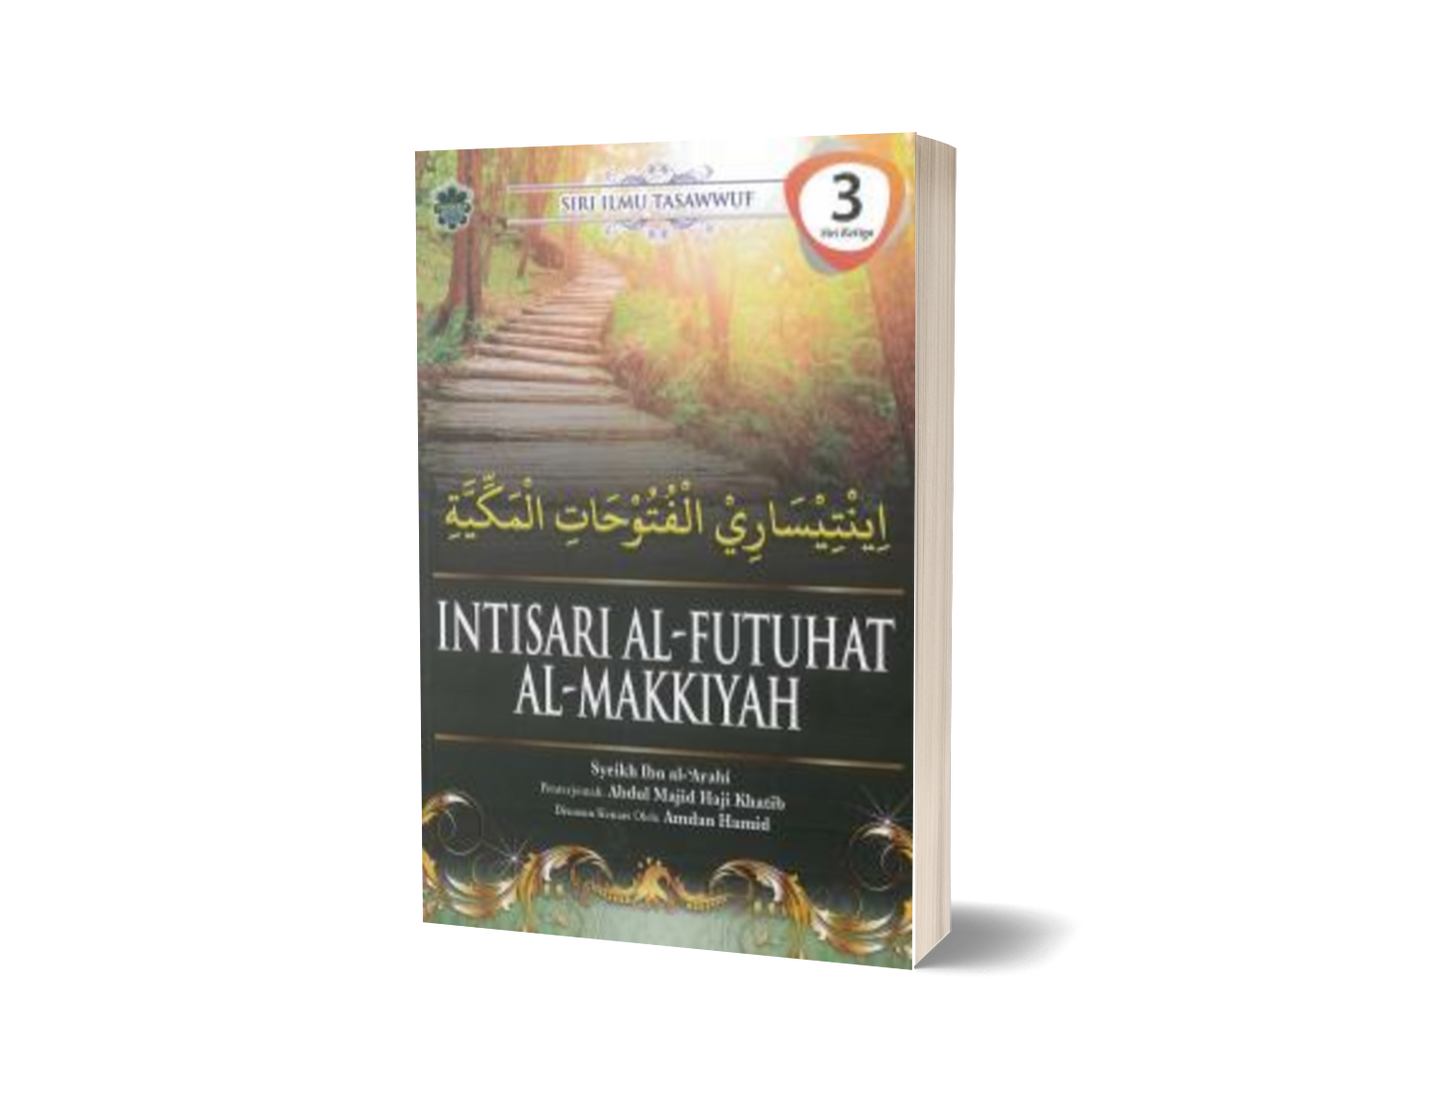 Intisari Al-futuhat Al-Makkiyah Siri 3